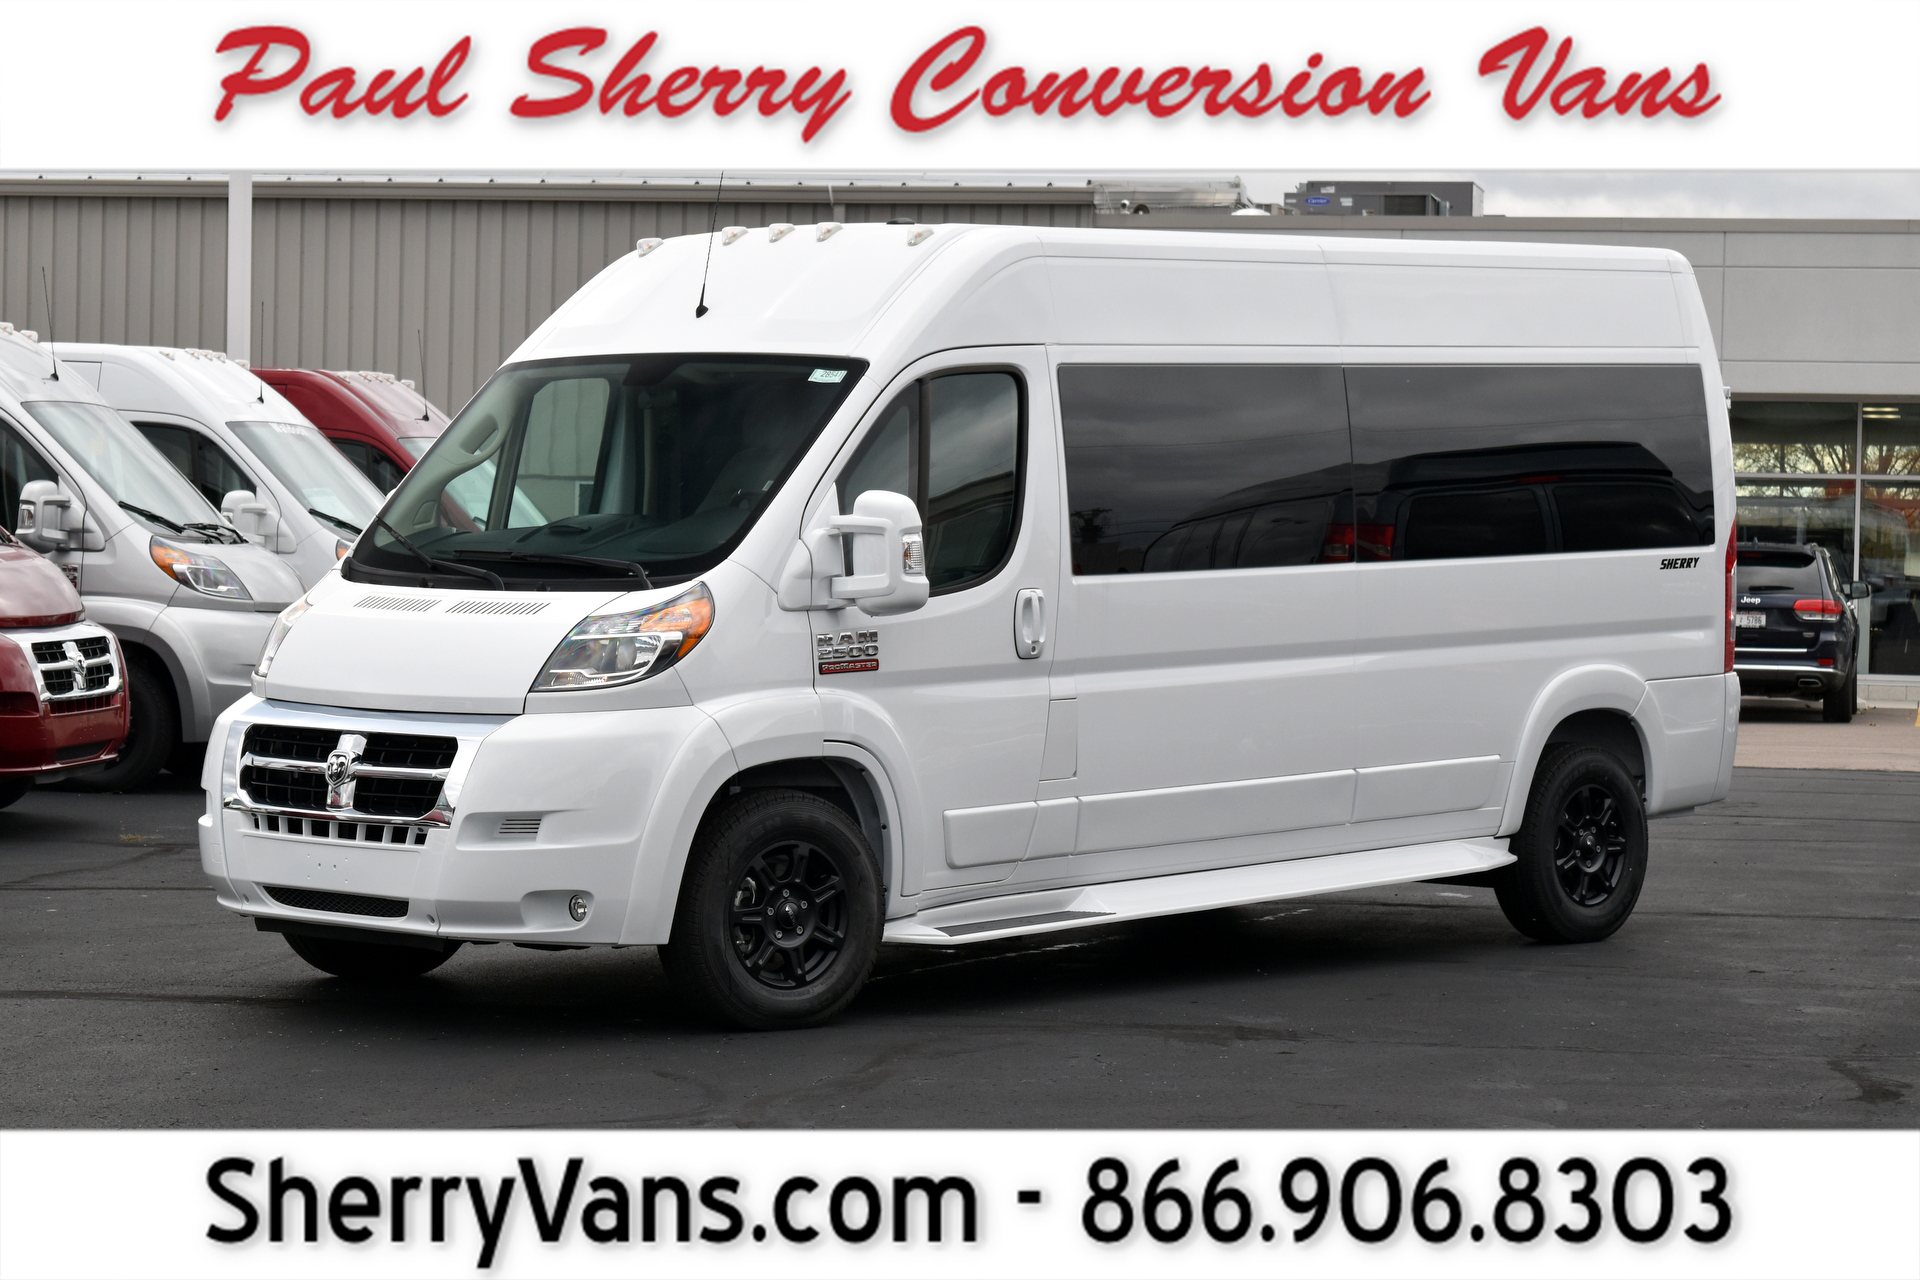 new conversion van price